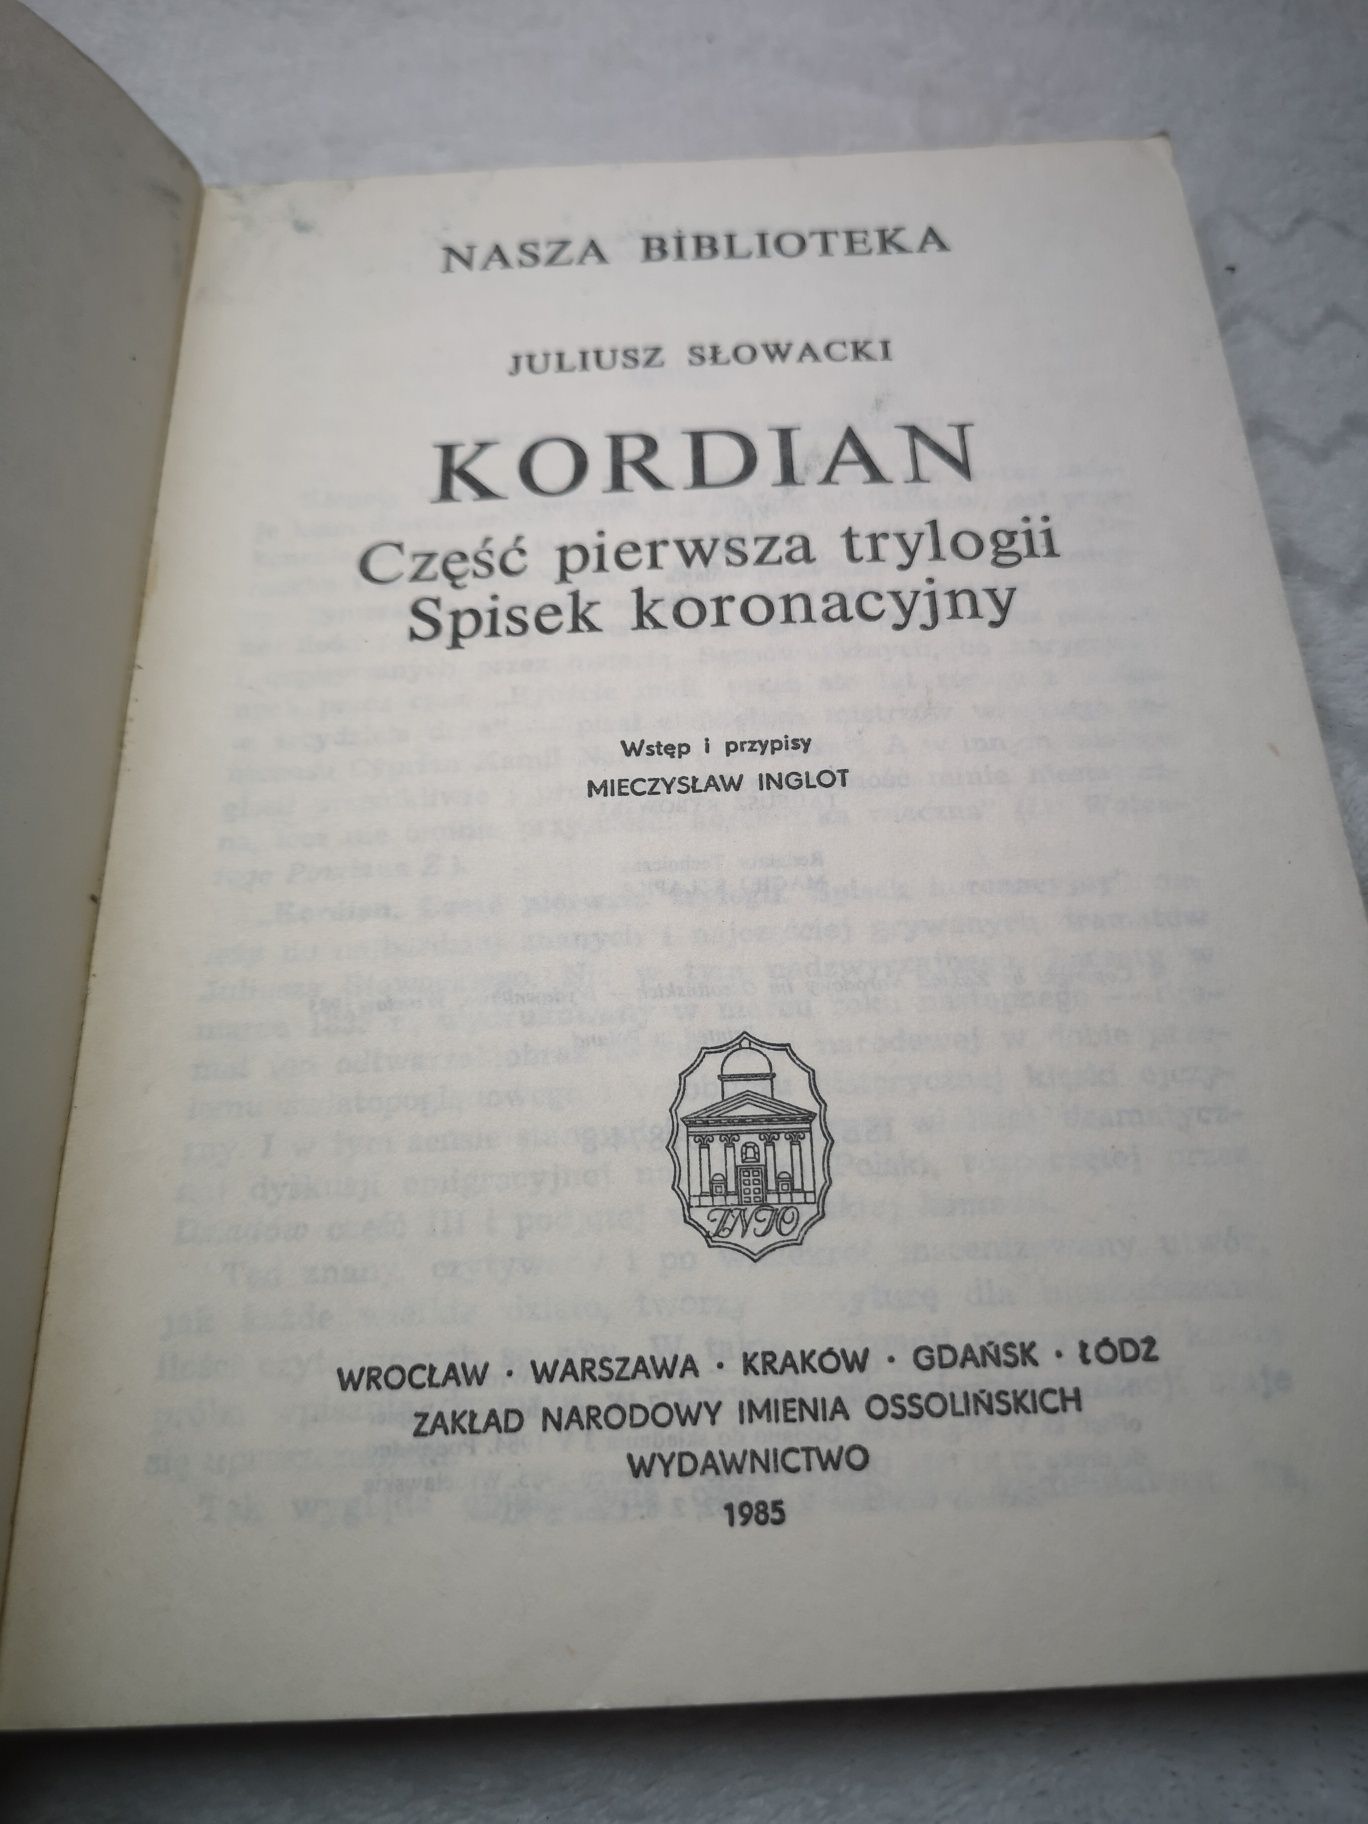 Książka "Kordian"